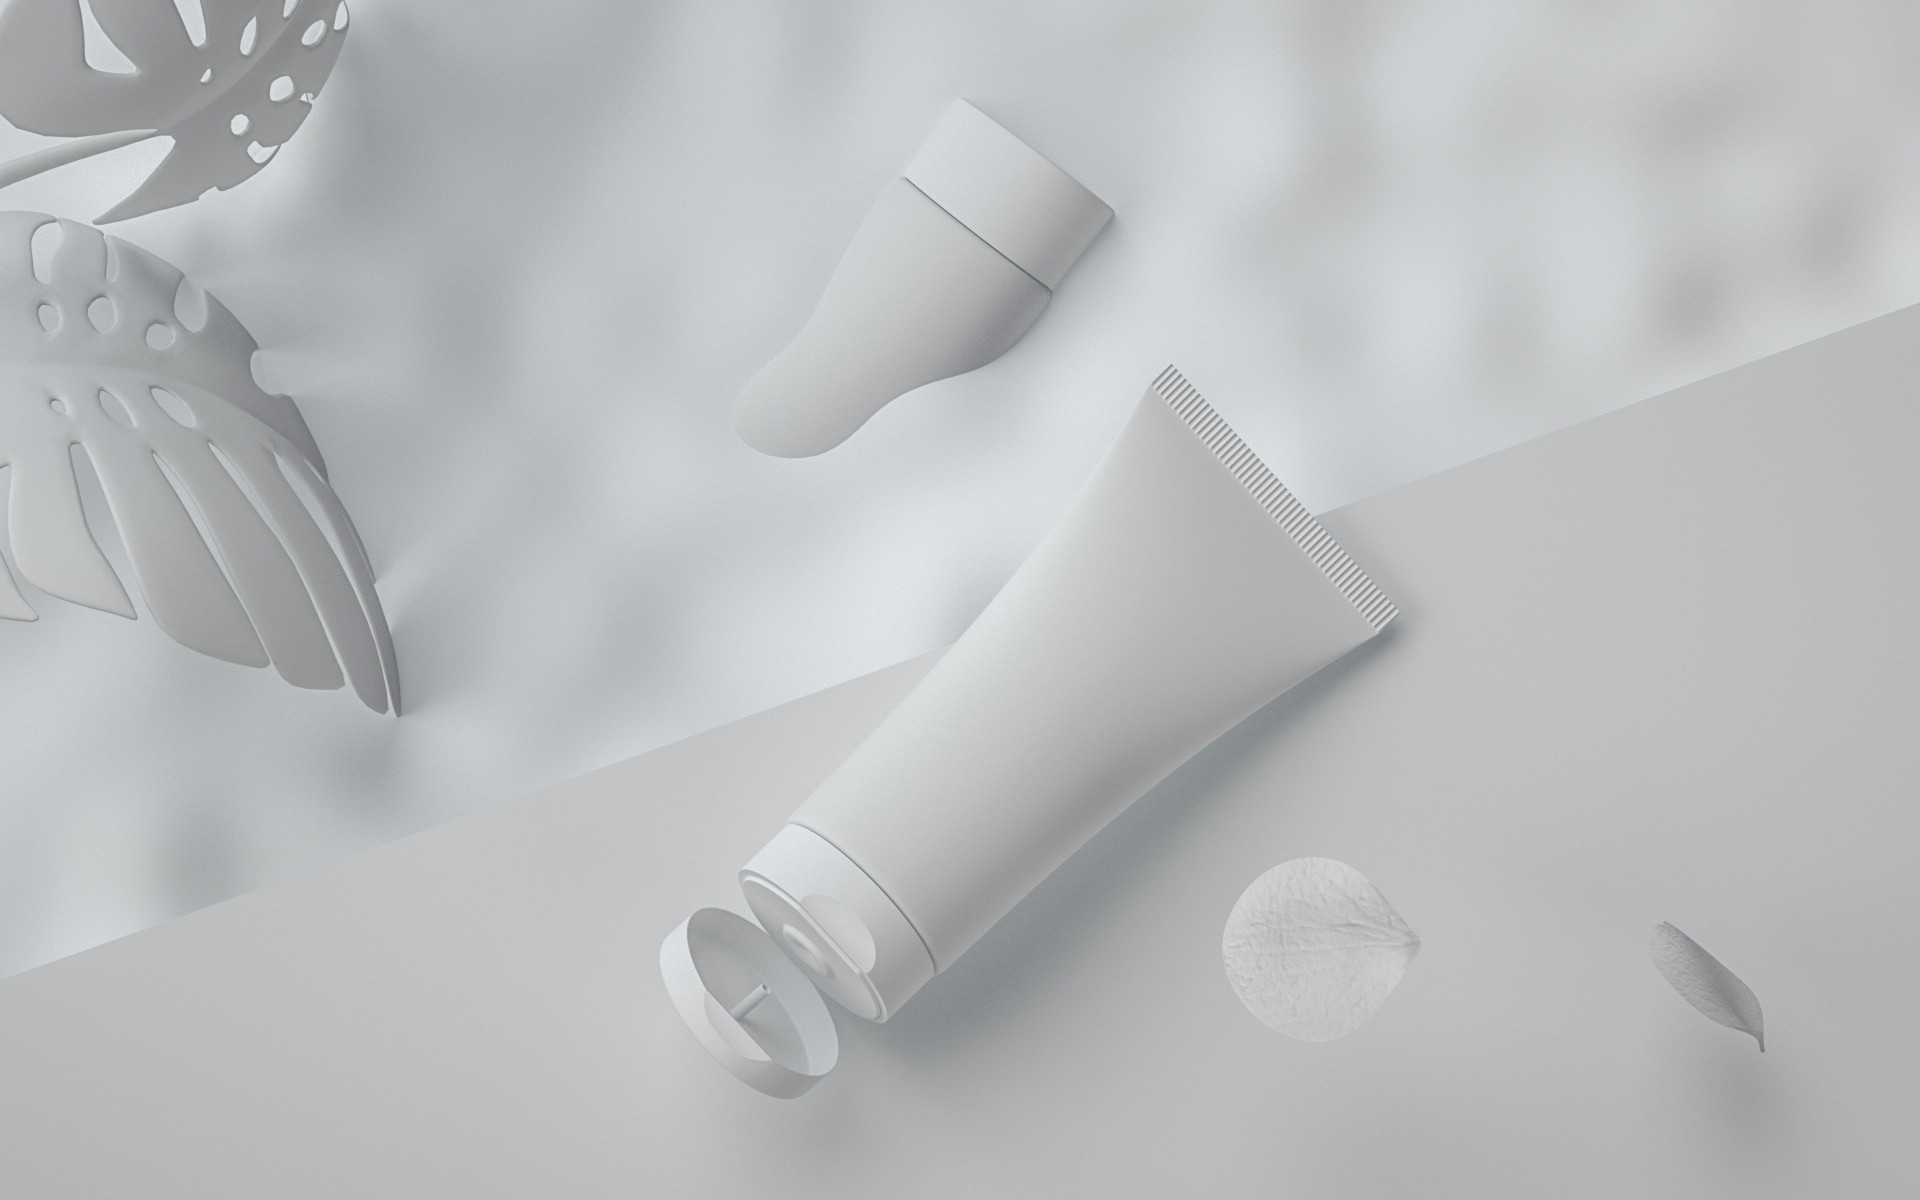 洗面霜——C4D产品建模渲染cqqioa11rmo.jpg